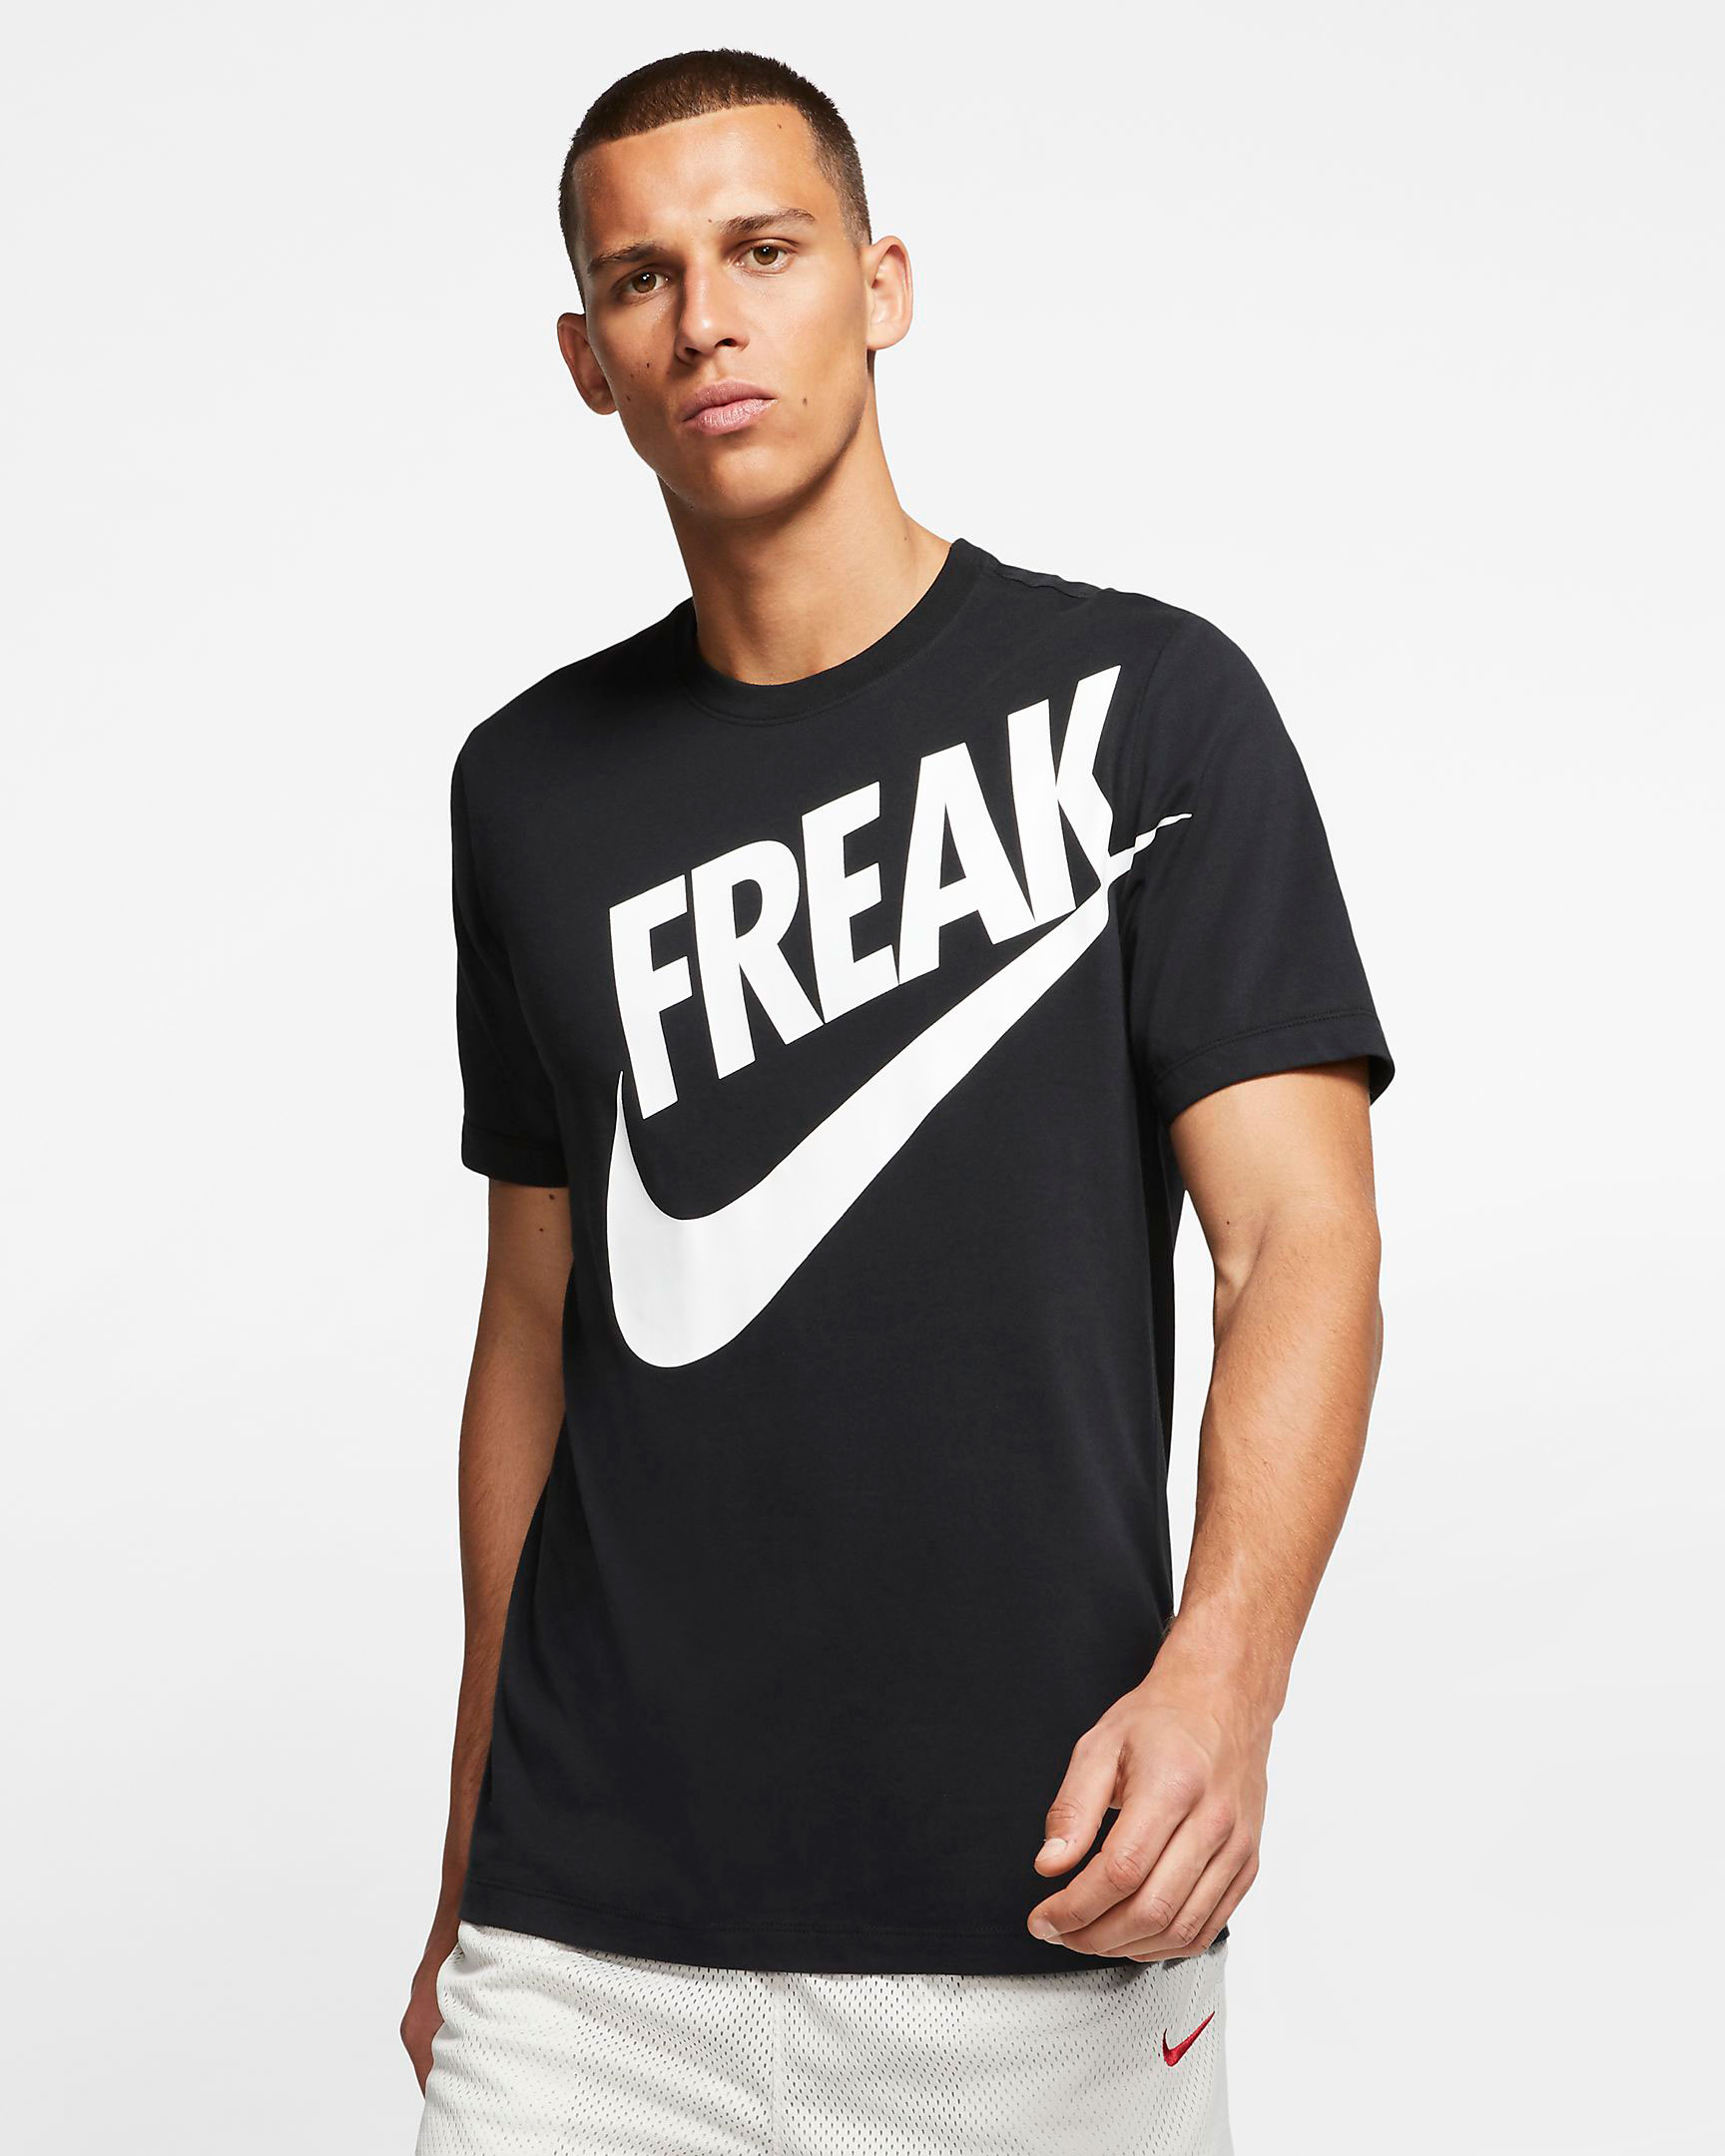 nike-giannis-freak-t-shirt-black-white